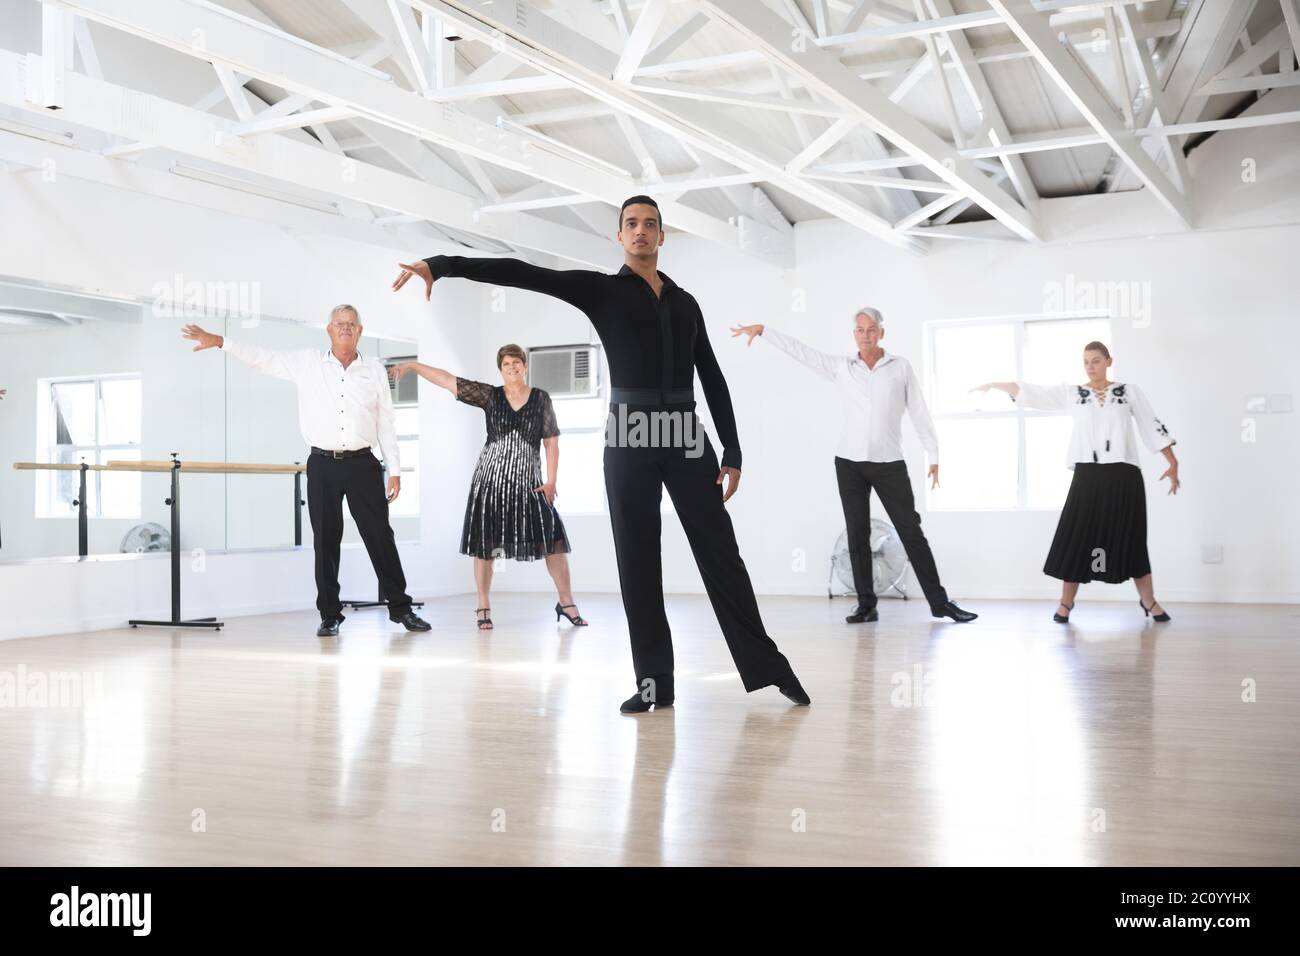 Profesor de danza mixta de carreras durante la clase de baile del salón de baile Foto de stock